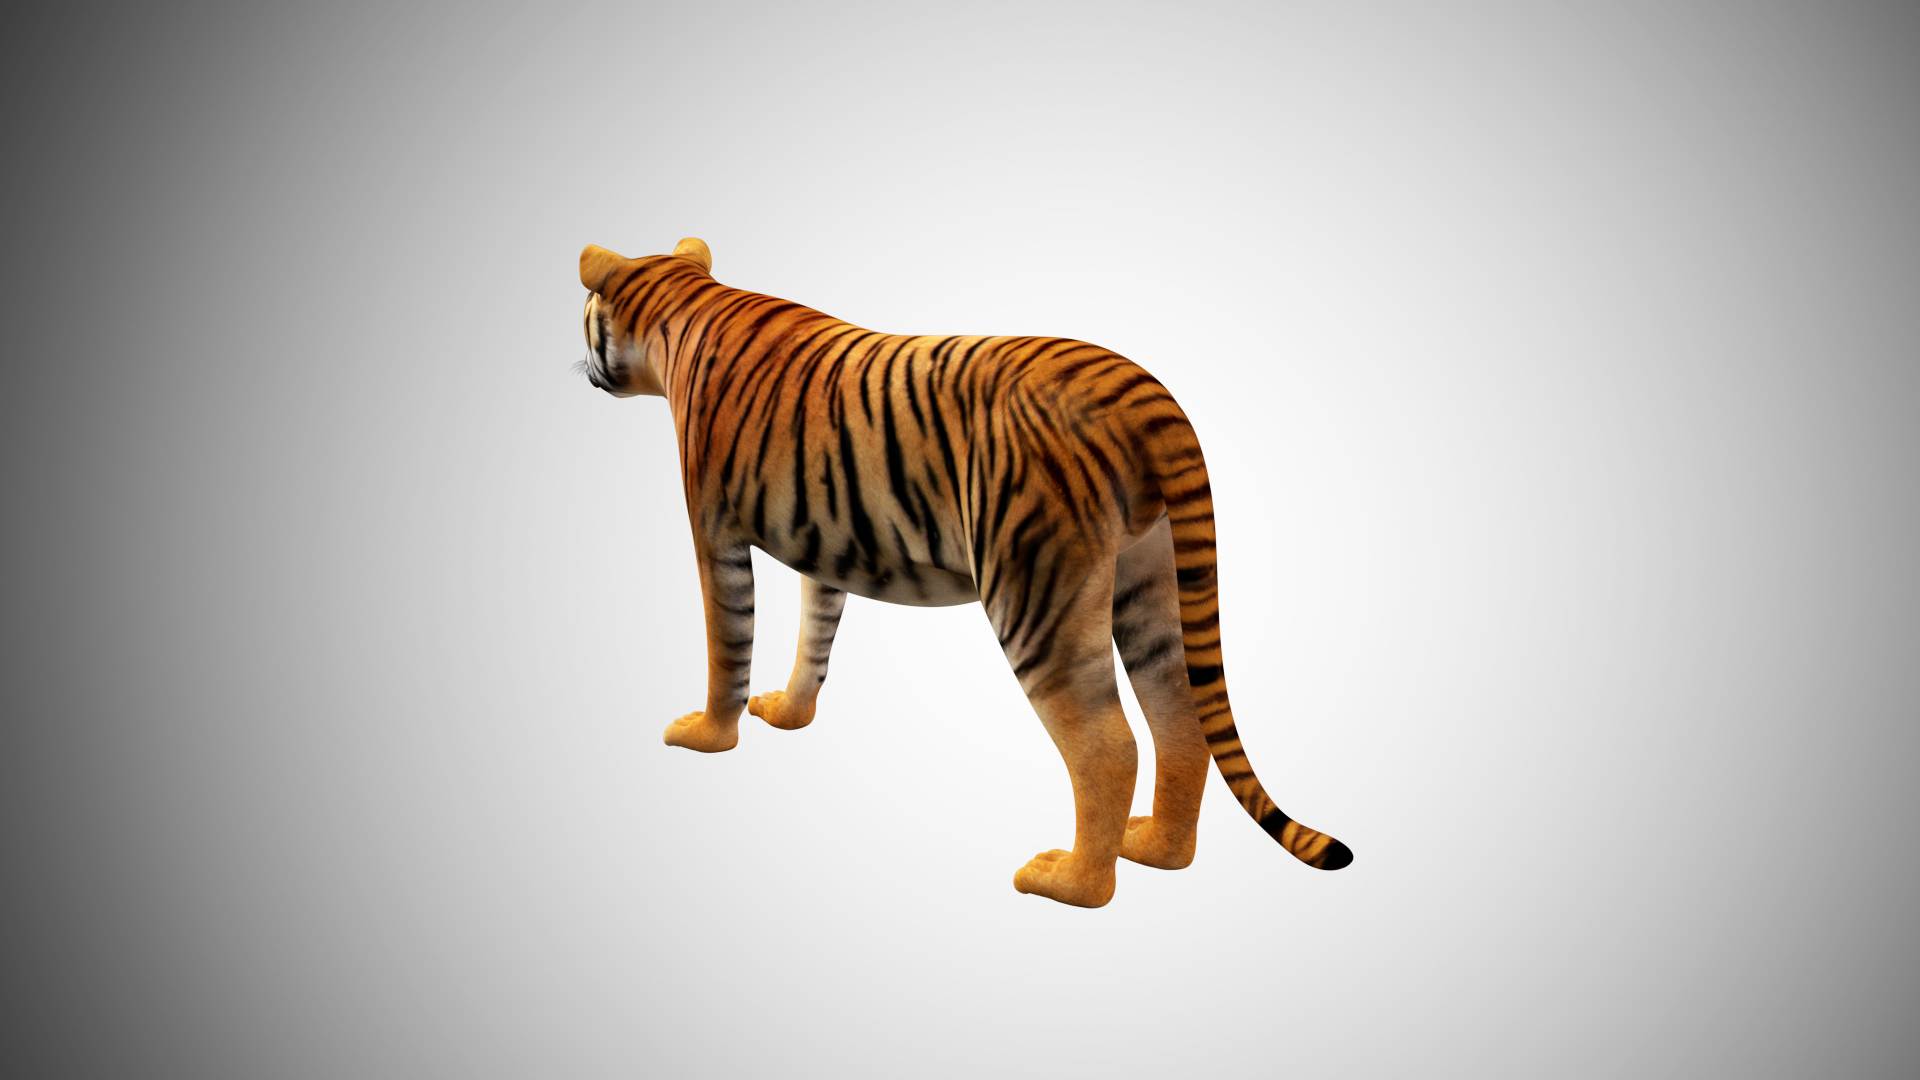 OBJ file TIGER DOWNLOAD Bengal TIGER 3d model animated for blender